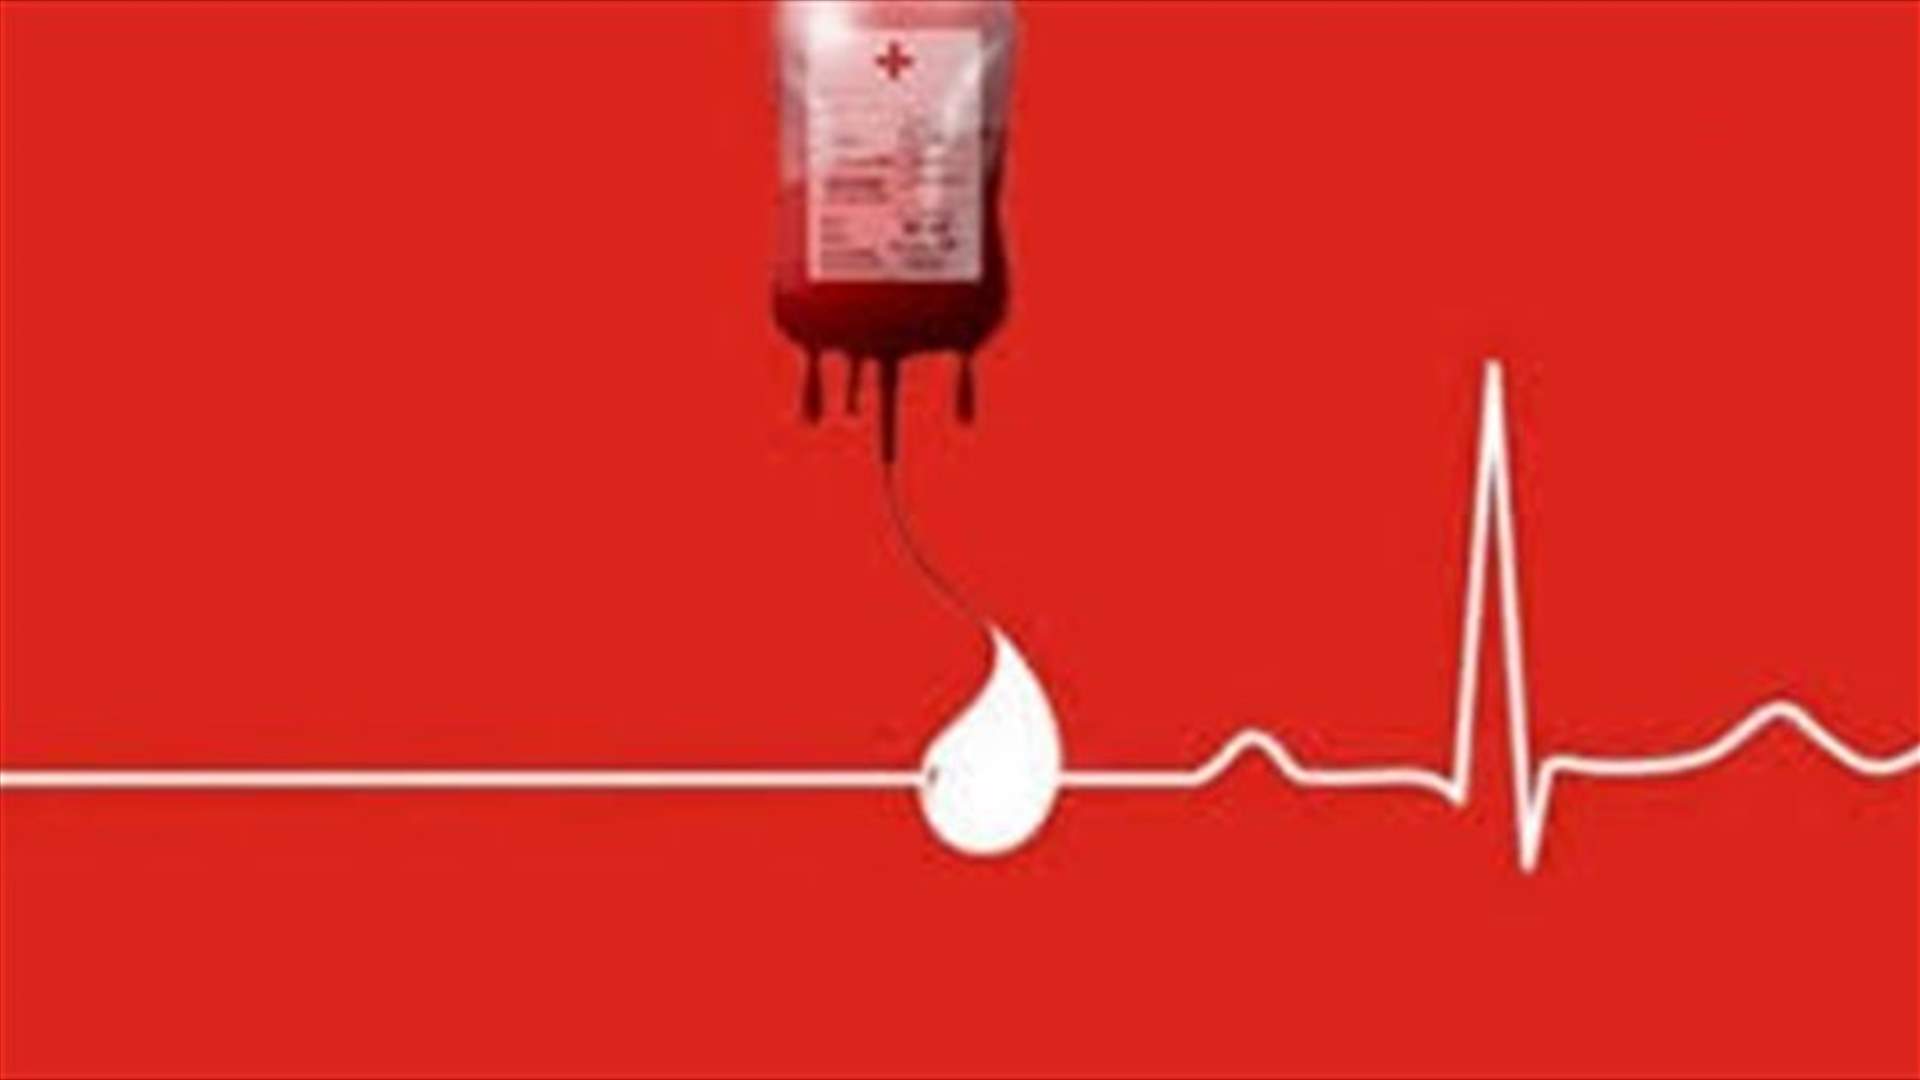 مريض في مستشفى رزق بحاجة ماسة لوحدتي دم من فئة O-.. للتبرع الاتصال على الرقم: 71883445